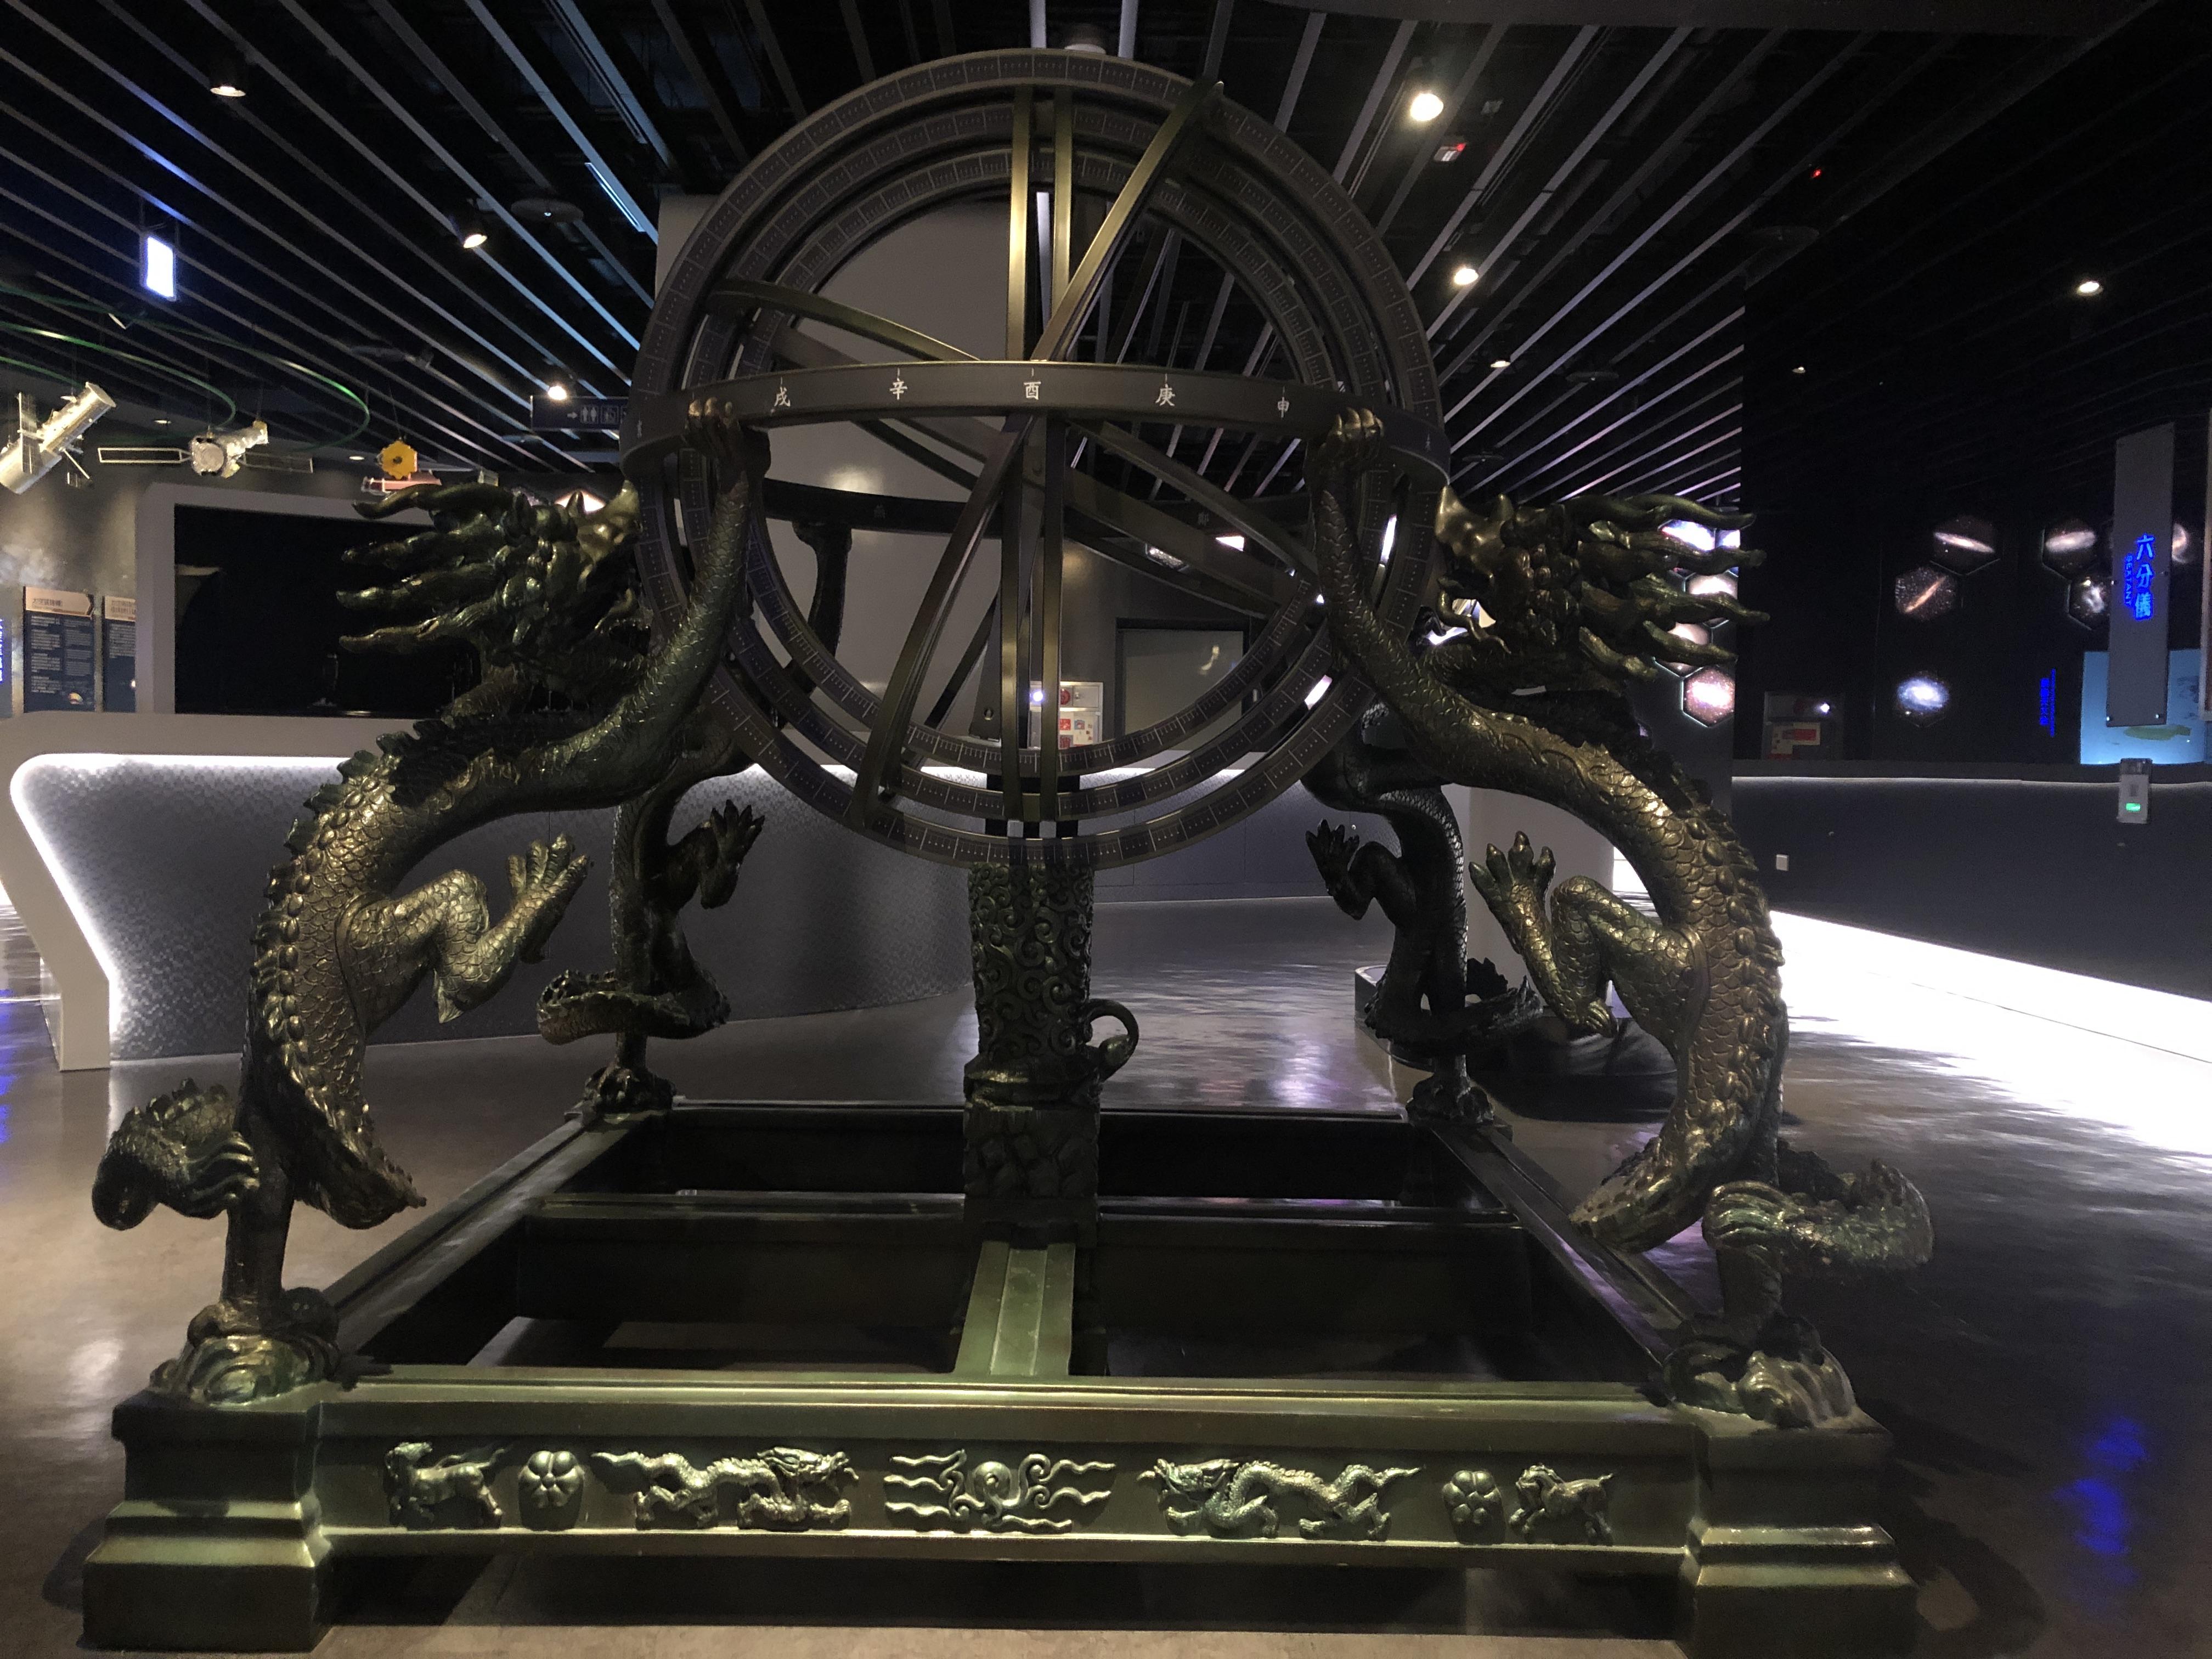 上圖所示「渾儀」為中國古代與渾天說密切相關的天文儀器之一，上面有天干地支